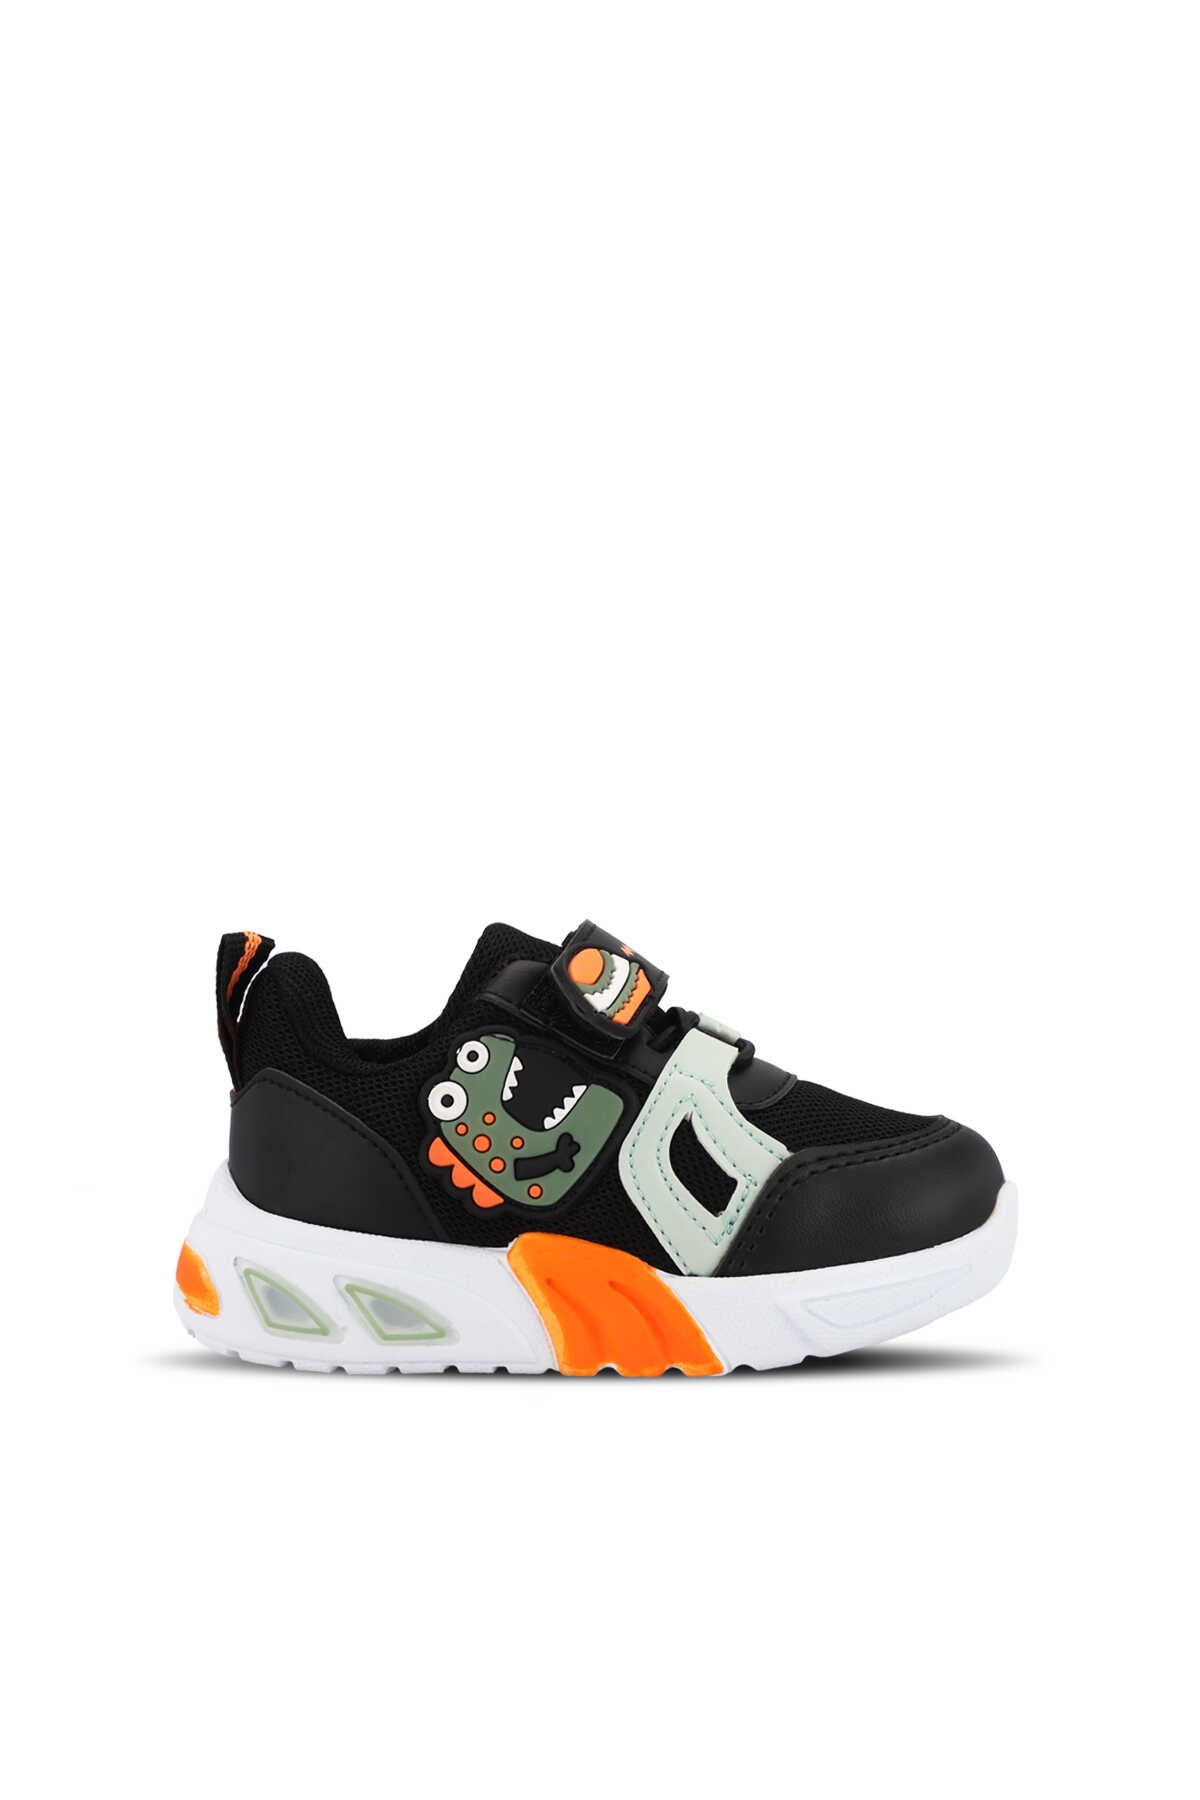 Mille - Mille PANAMA Unisex Çocuk Sneaker Ayakkabı Siyah / Yeşil